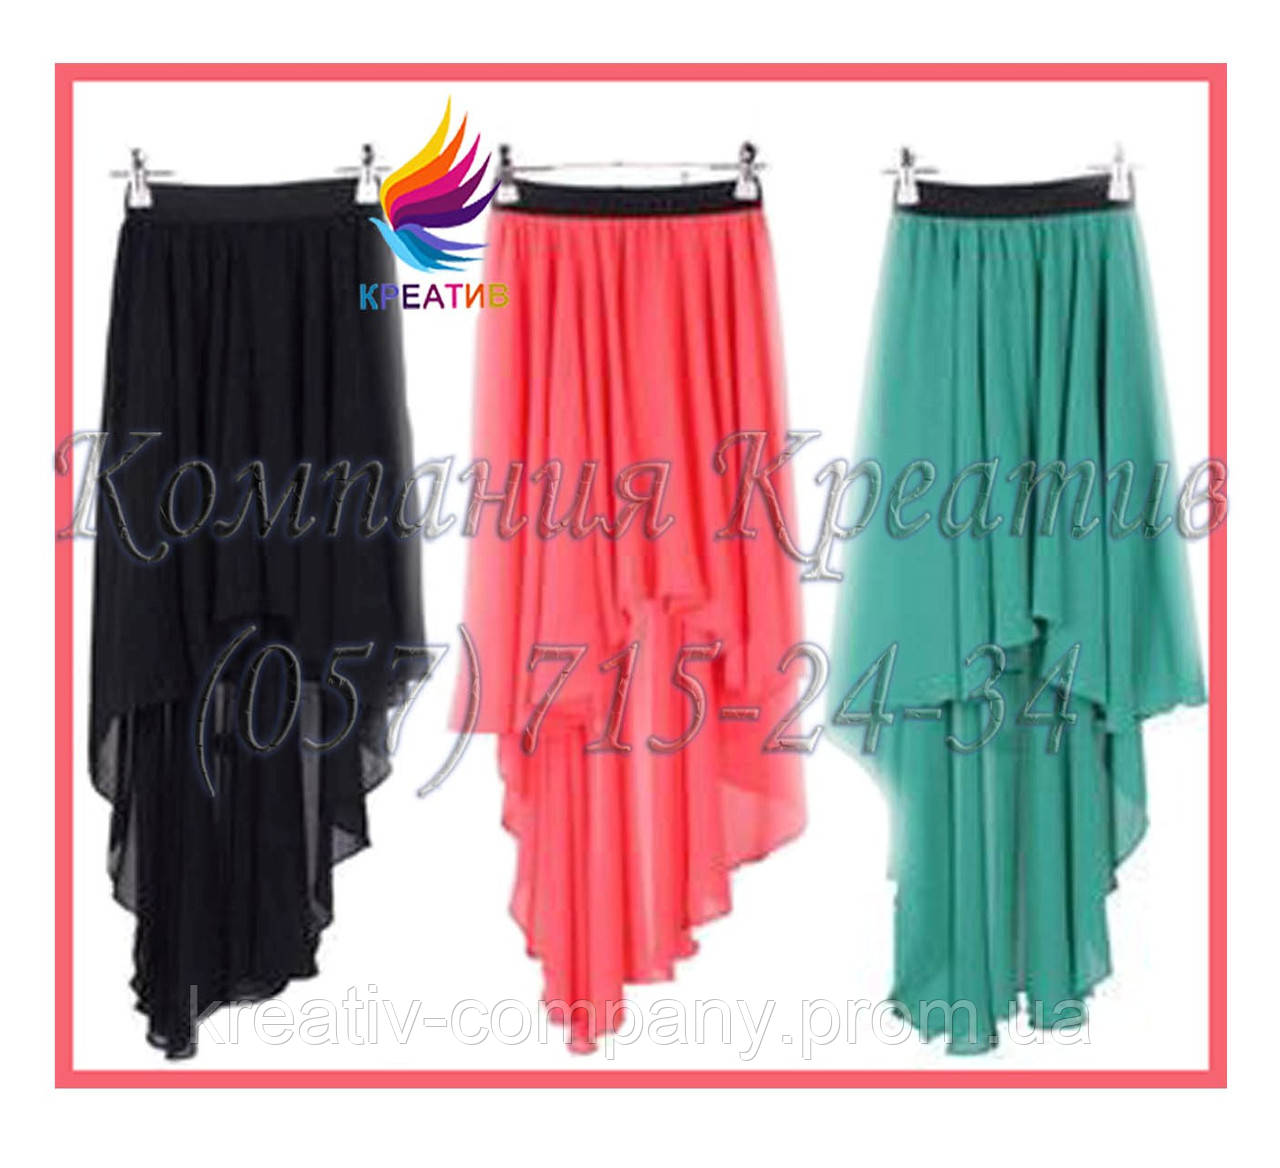 Асимметричные юбки для промо акций (под заказ от 50 шт.), Разные цвета